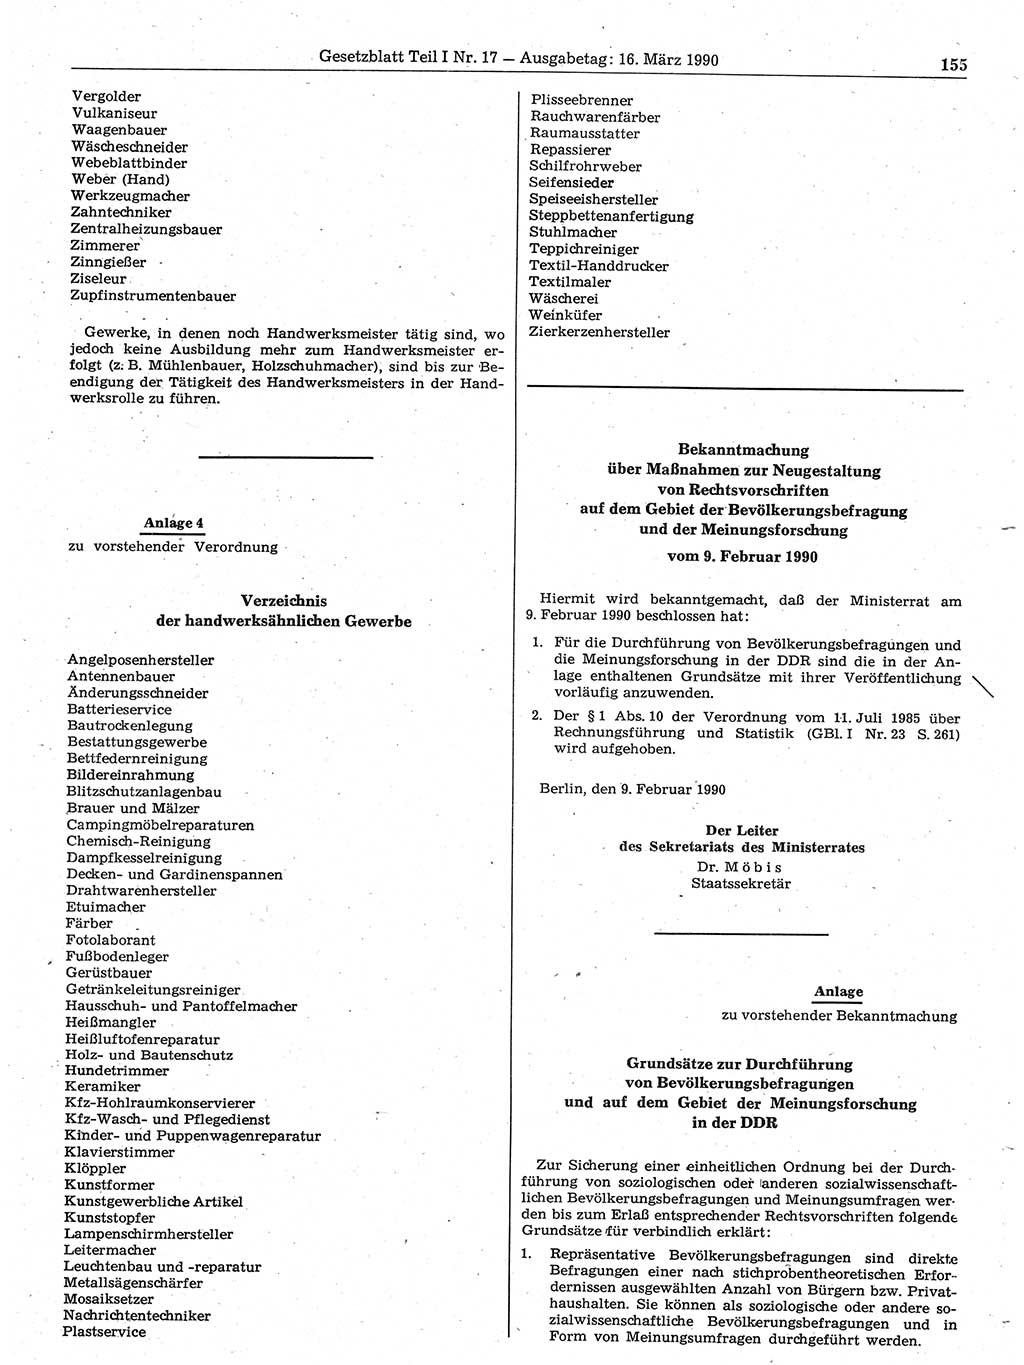 Gesetzblatt (GBl.) der Deutschen Demokratischen Republik (DDR) Teil Ⅰ 1990, Seite 155 (GBl. DDR Ⅰ 1990, S. 155)